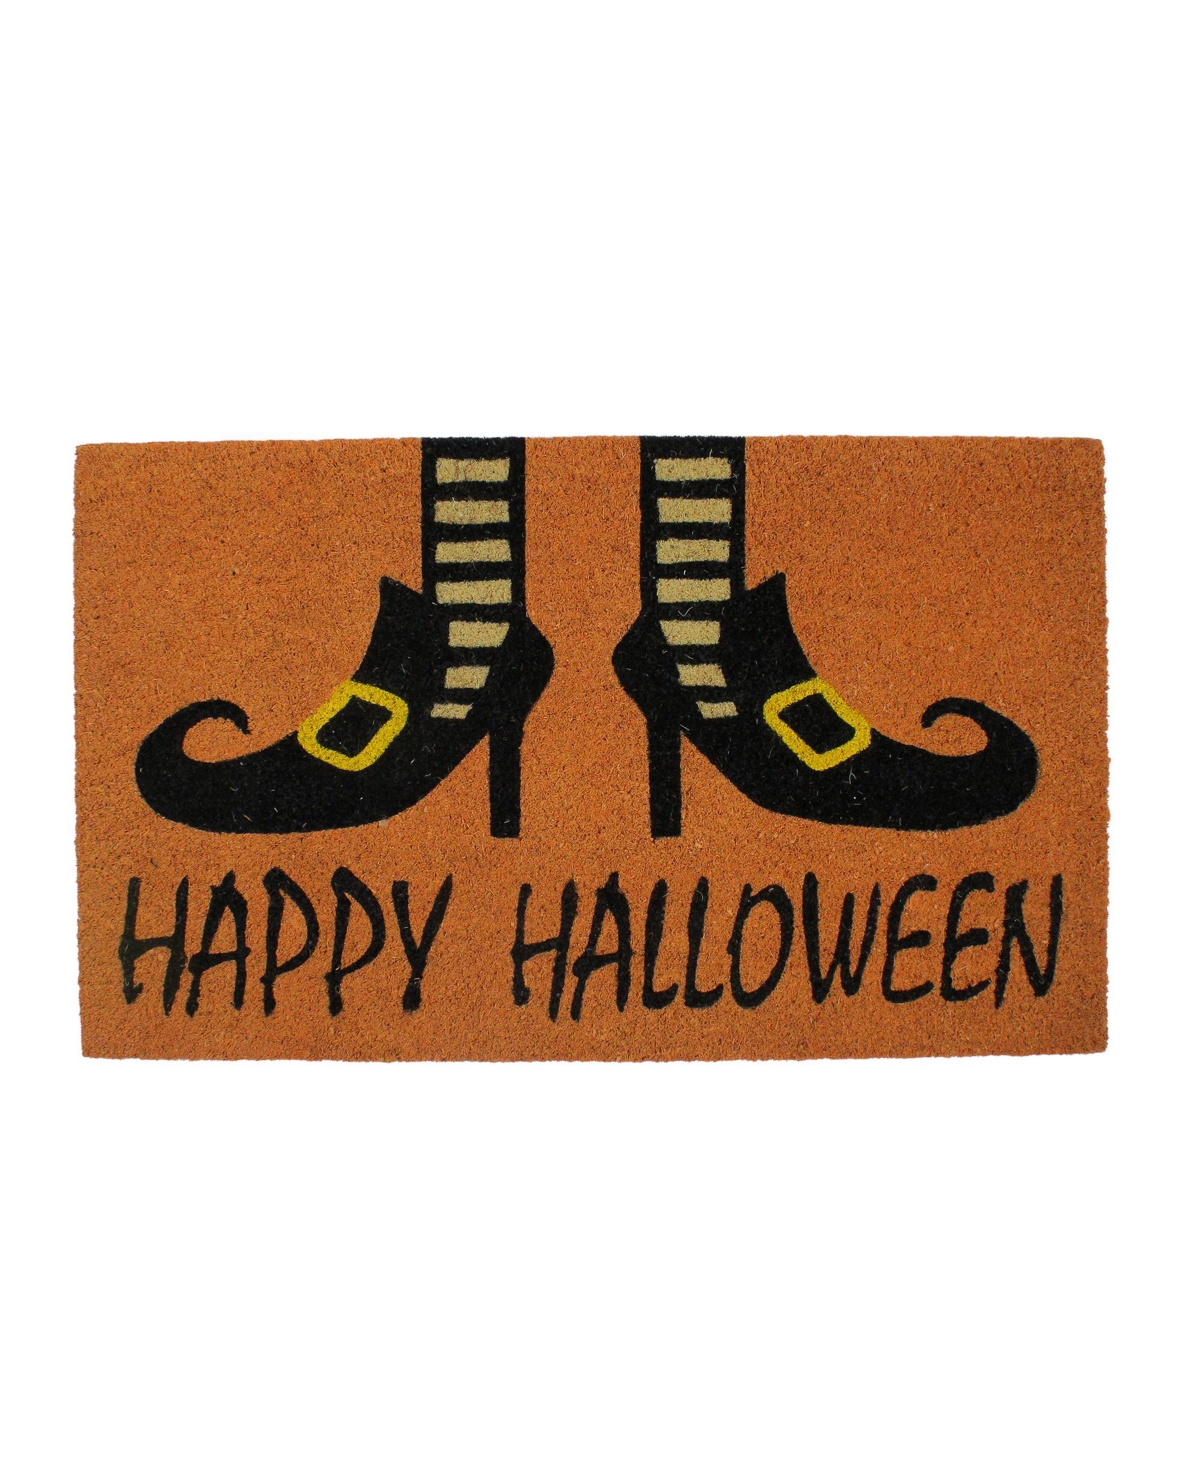 Wicked Witch Shoes "Happy Halloween" Coir Doormat, 18" x 30" - Brown